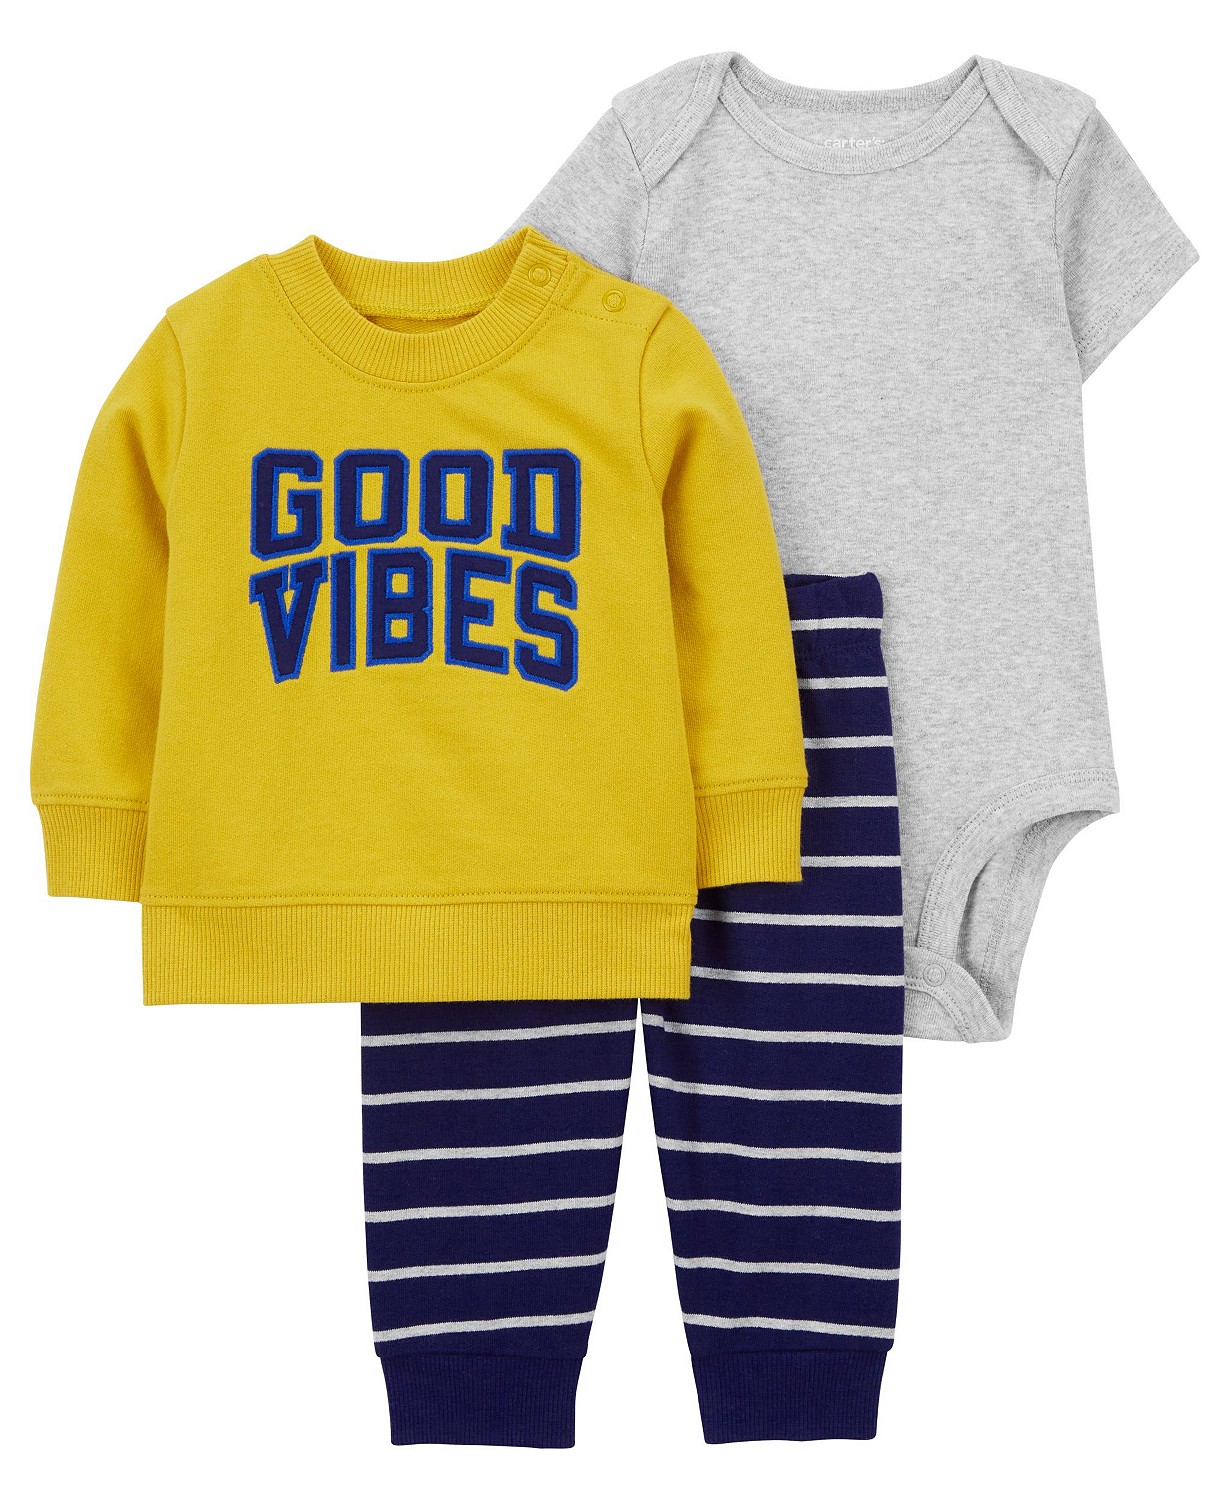 카터스 Baby Boys Good Vibes Little Pullover Bodysuit and Pants 3 Piece Set